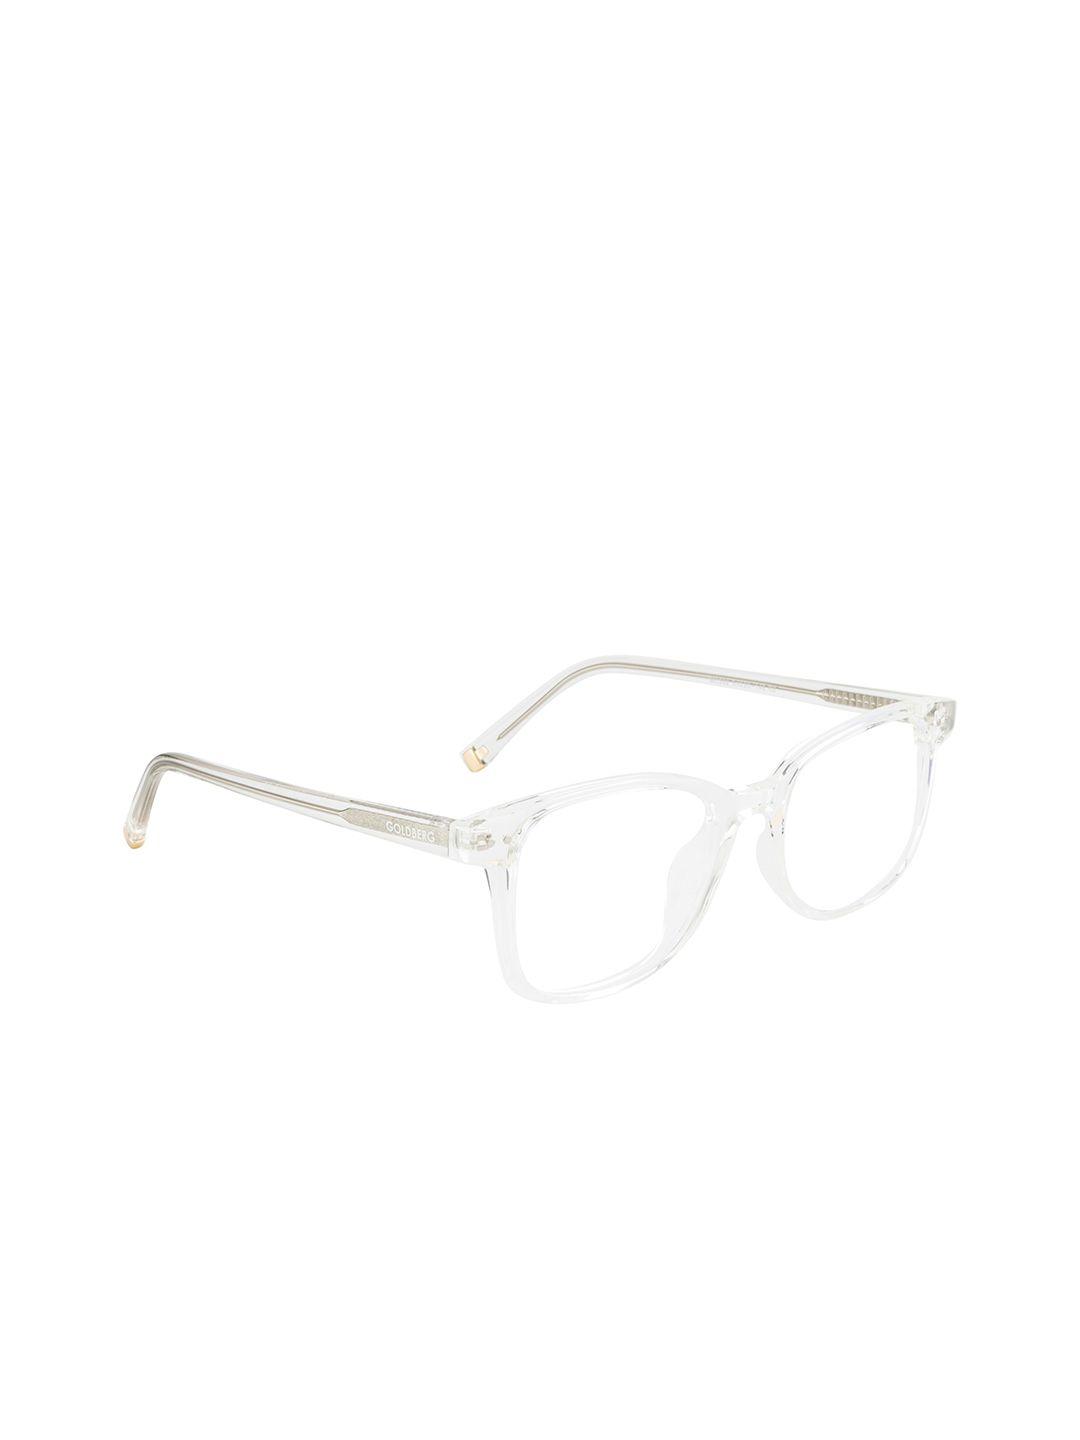 gold berg unisex transparent full rim square frames eyeglasses